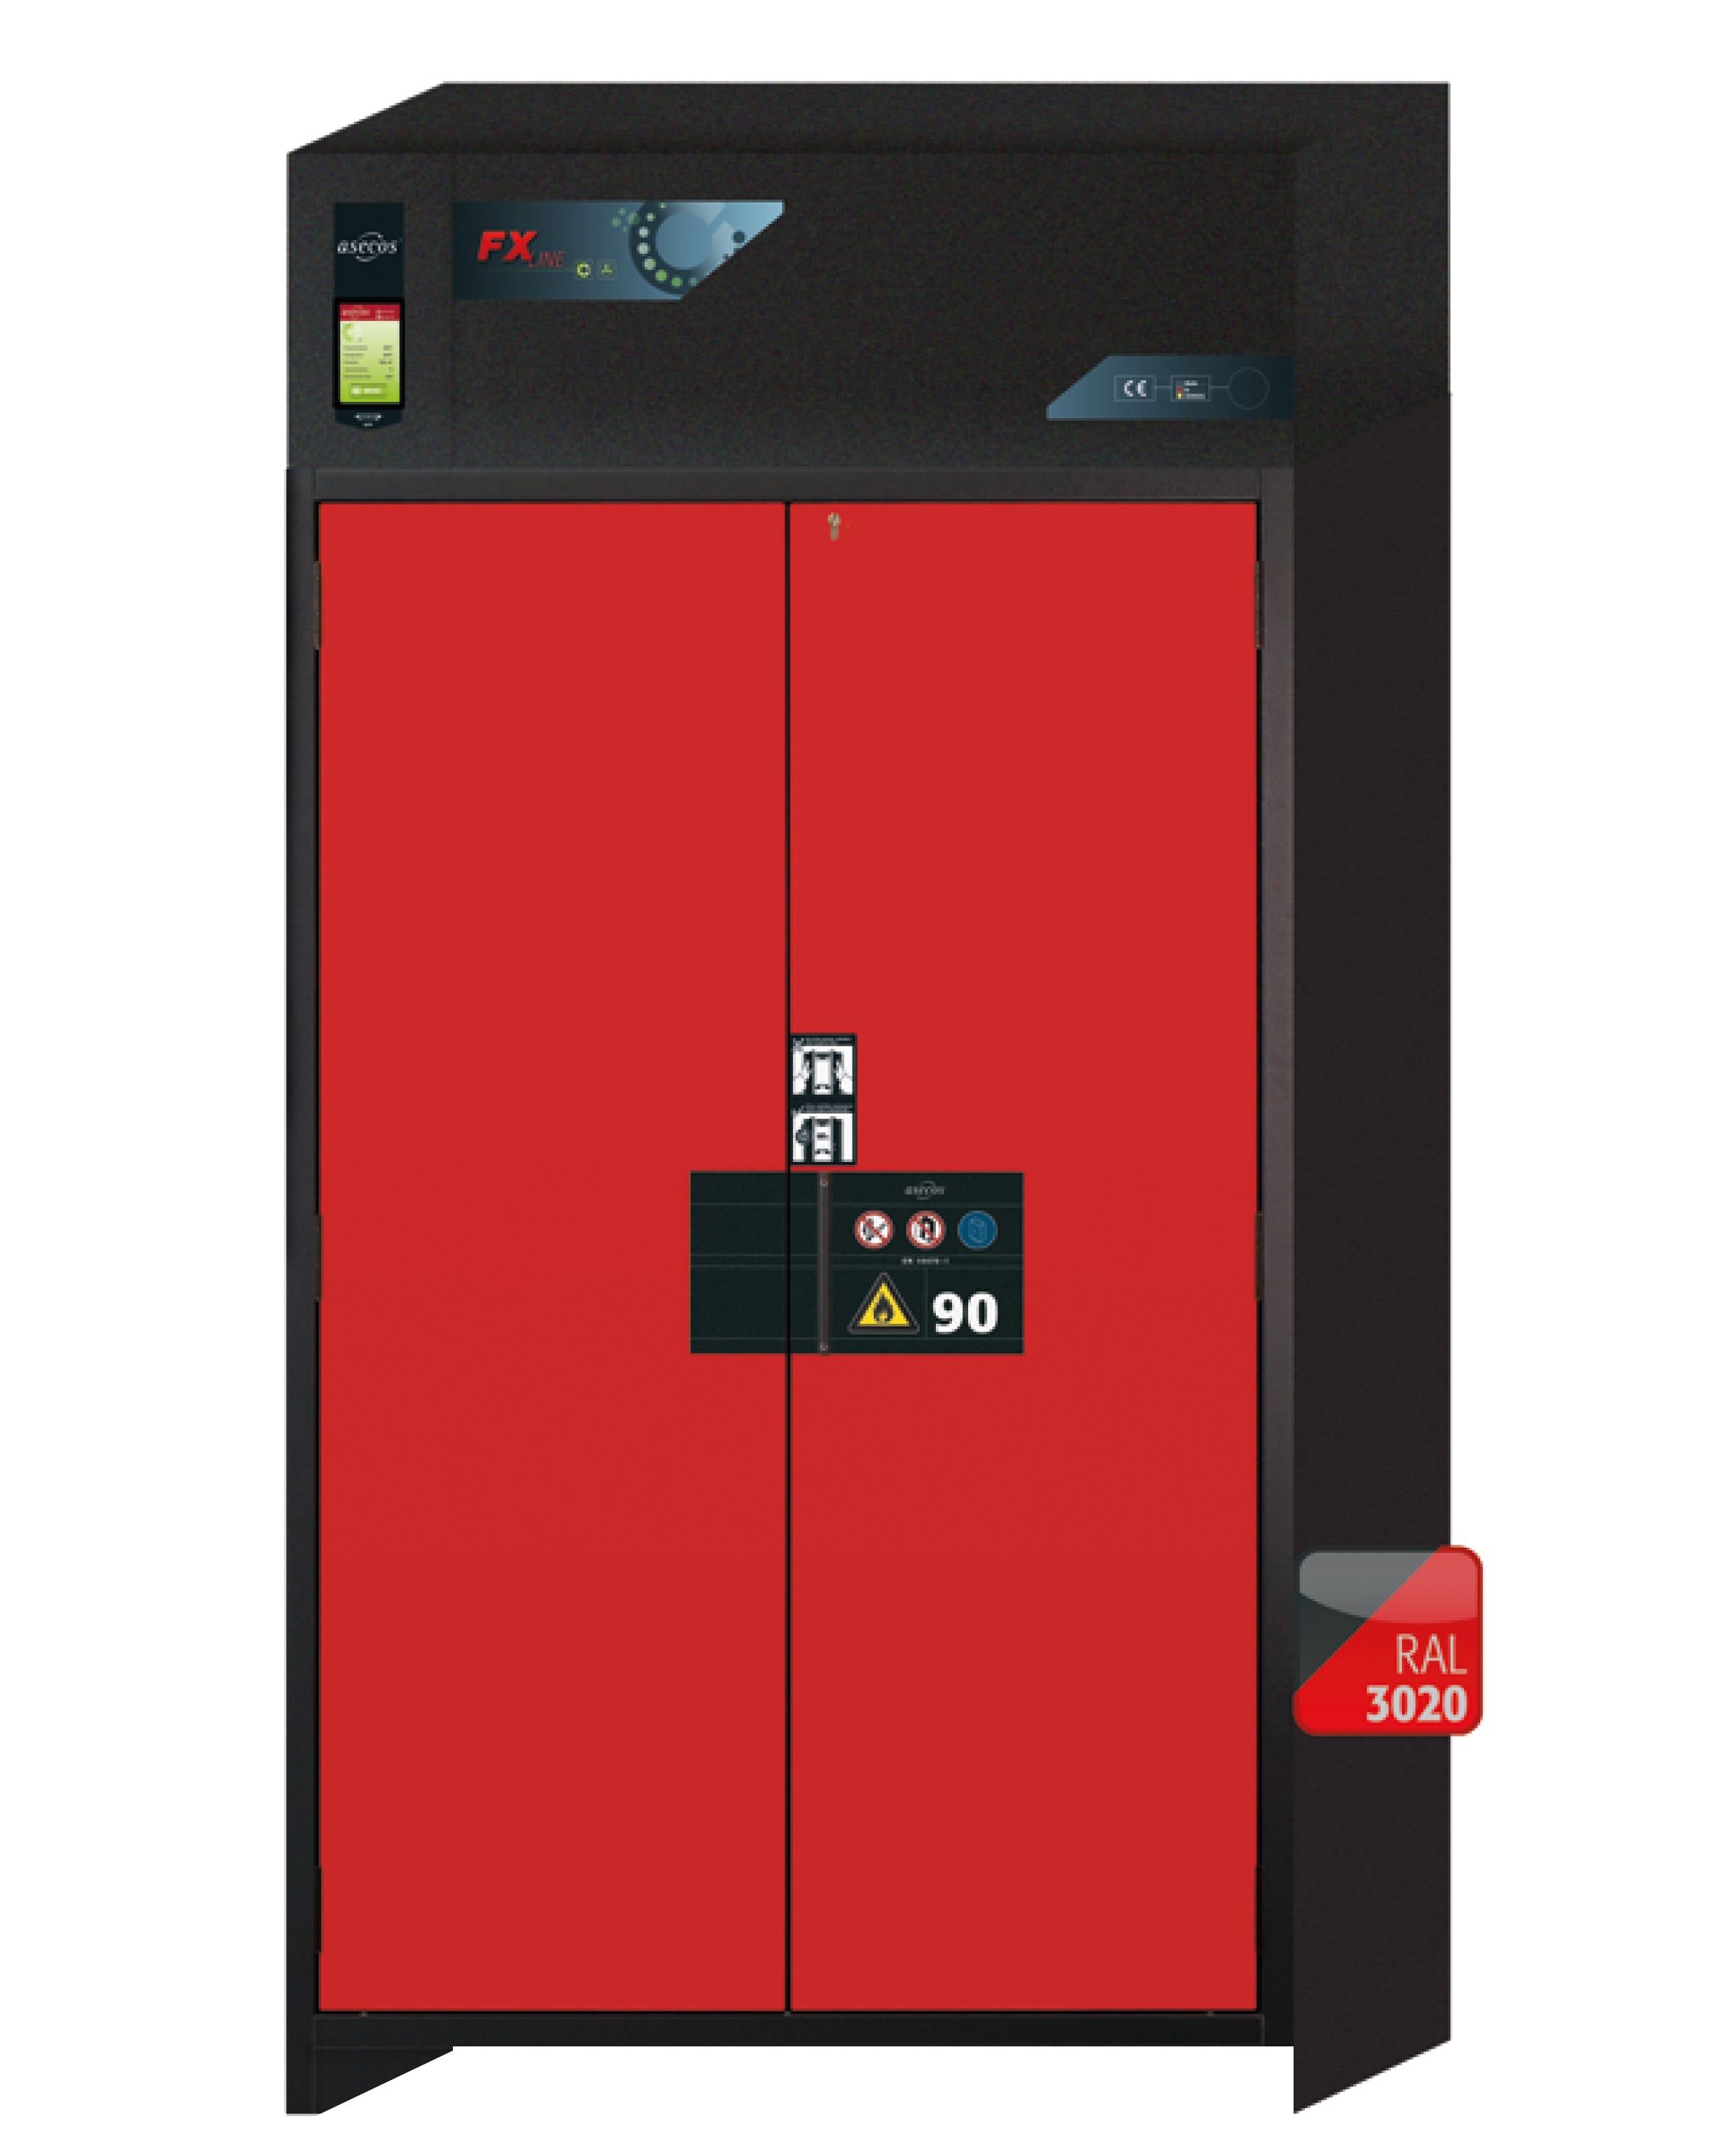 Armoire de filtration d'air de recirculation de type 90 FX-PEGASUS-90 modèle FX90.229.120.WDAC en rouge signalisation RAL 3020 avec 3x socles à plateaux standard (tôle d'acier)